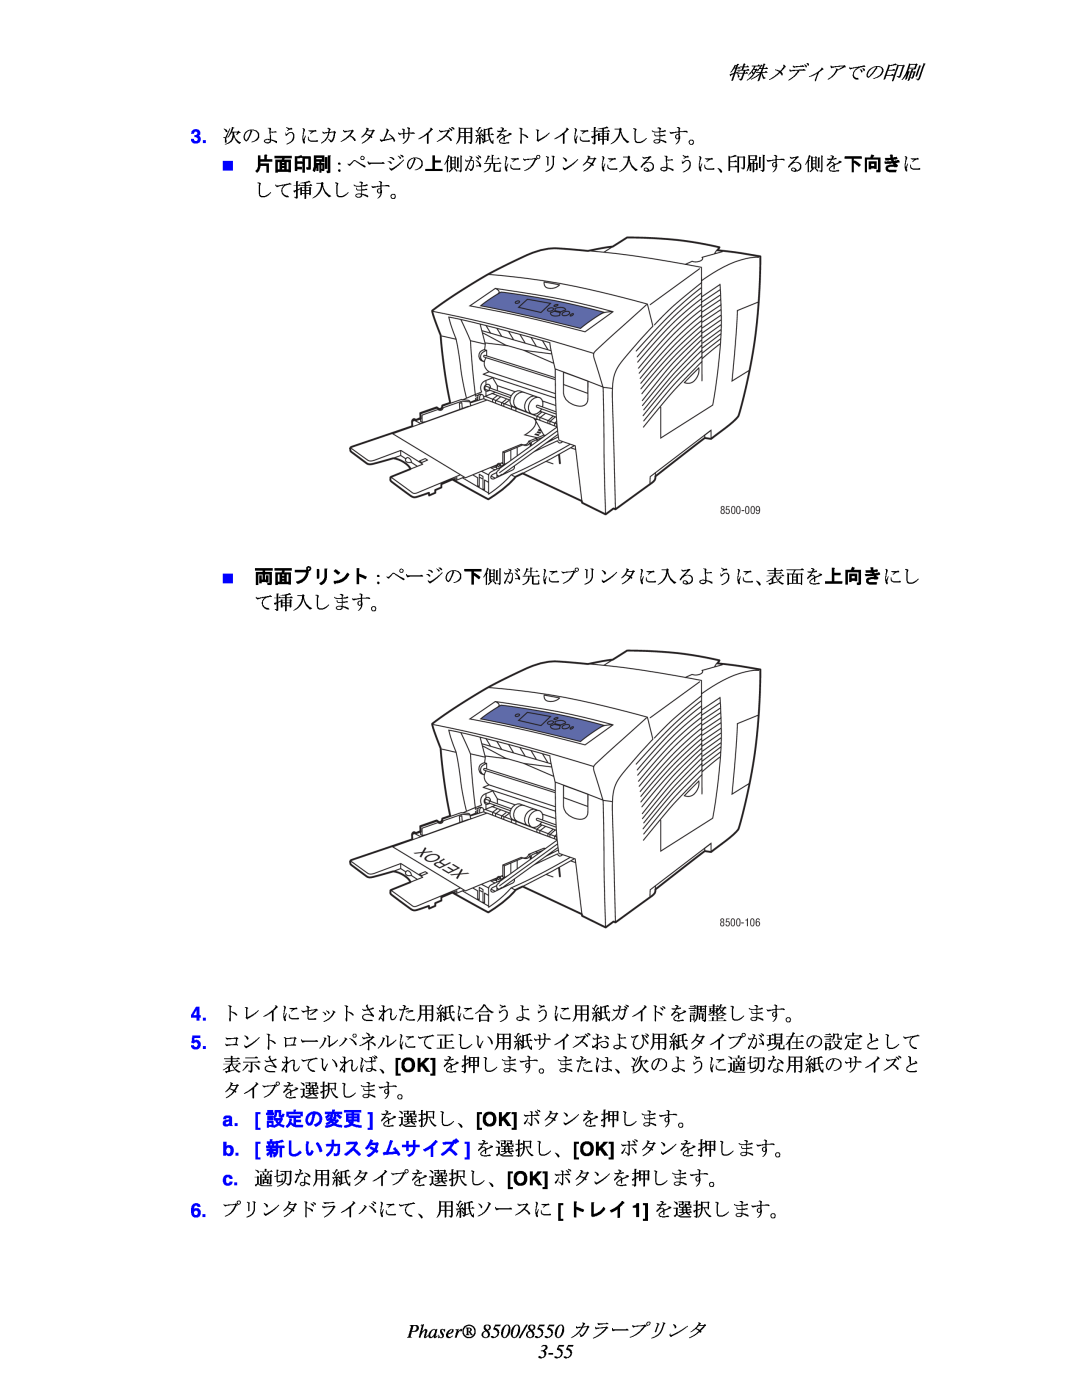 Xerox manual 特殊メデ ィ アでの印刷, Phaser 8500/8550 カ ラープ リ ン タ 3-55 